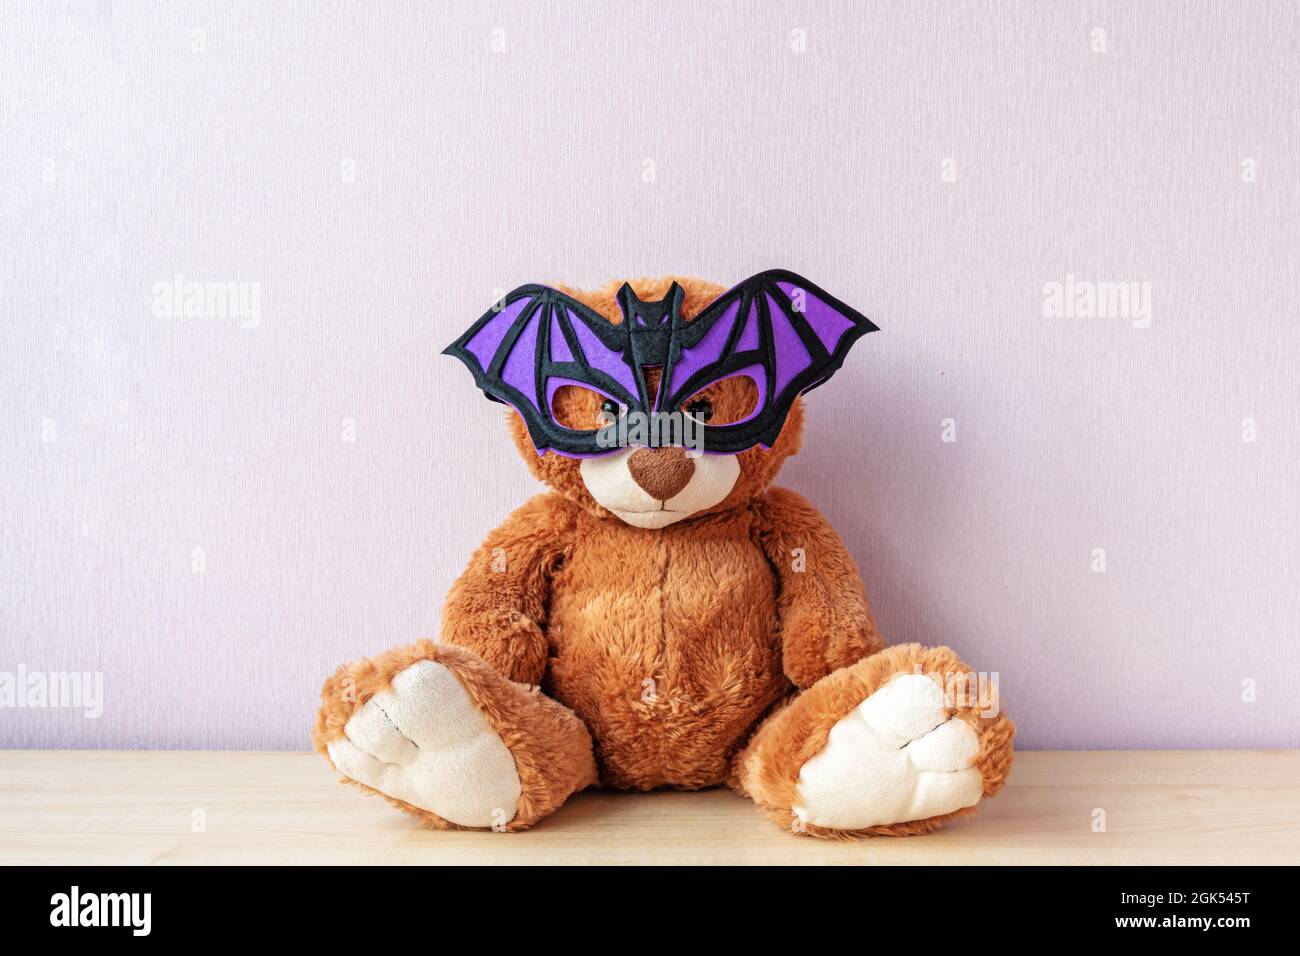 L'ours en peluche avec un masque en forme de chauve-souris est posé sur une table en bois Banque D'Images